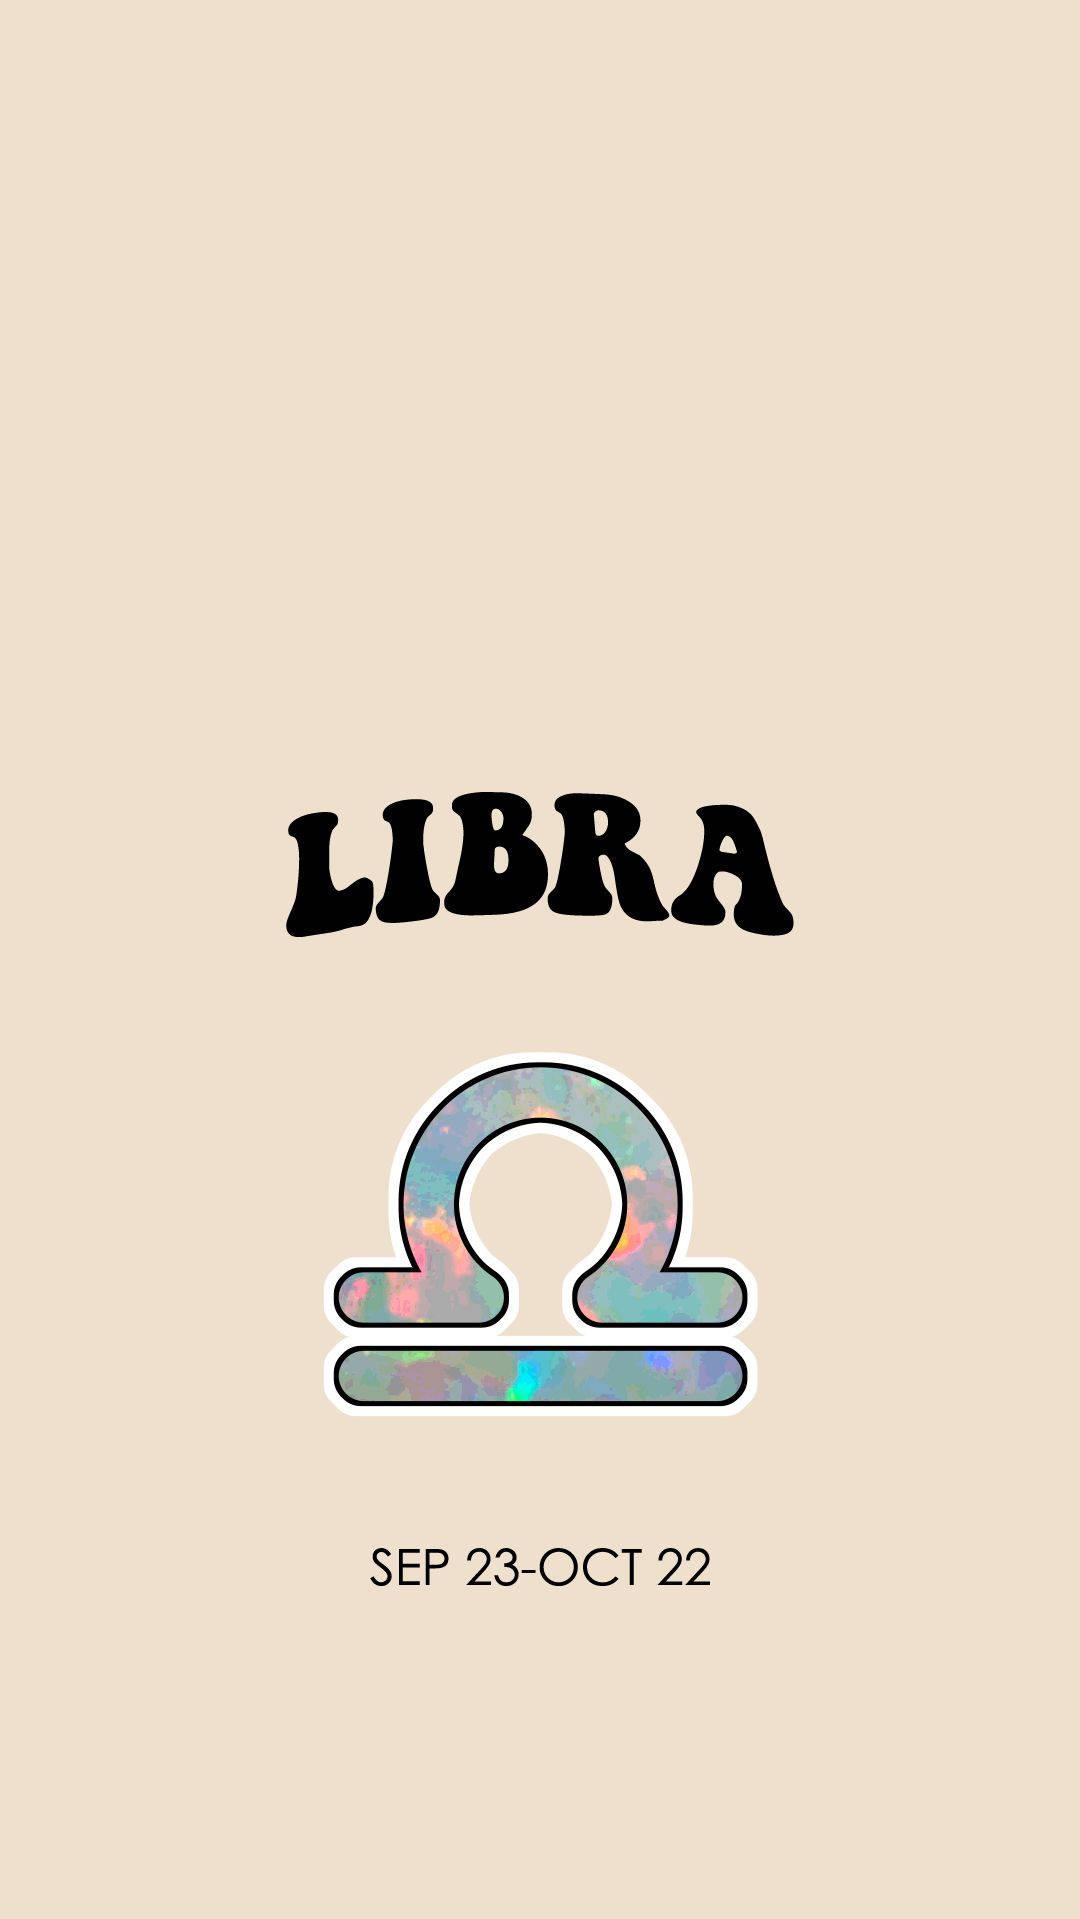 [26+] Zodiac Sign Libra Wallpapers | WallpaperSafari